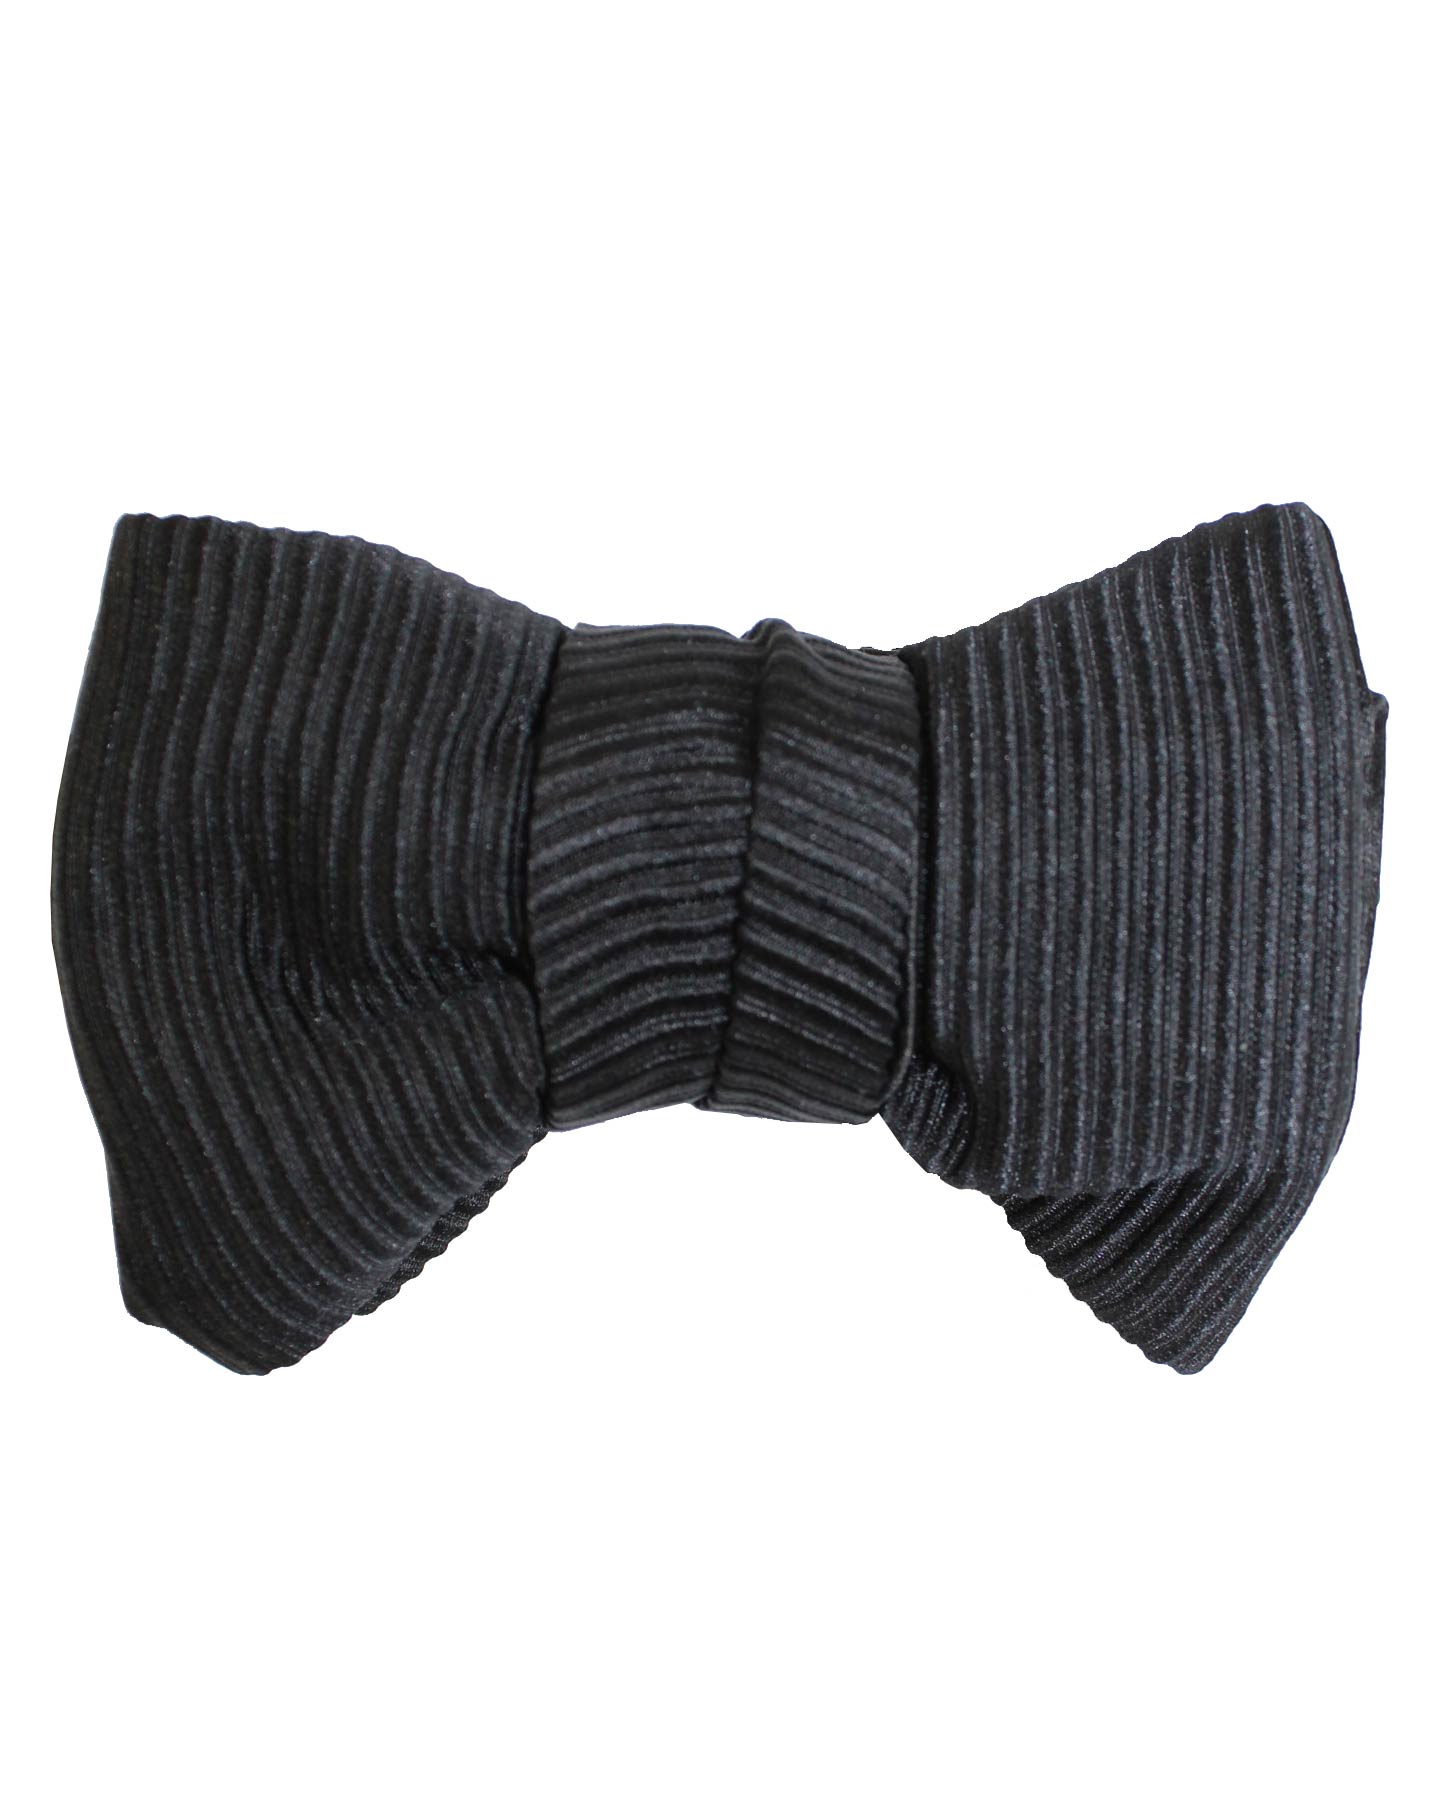 Le Noeud Papillon Black Grosgrain Bow Tie